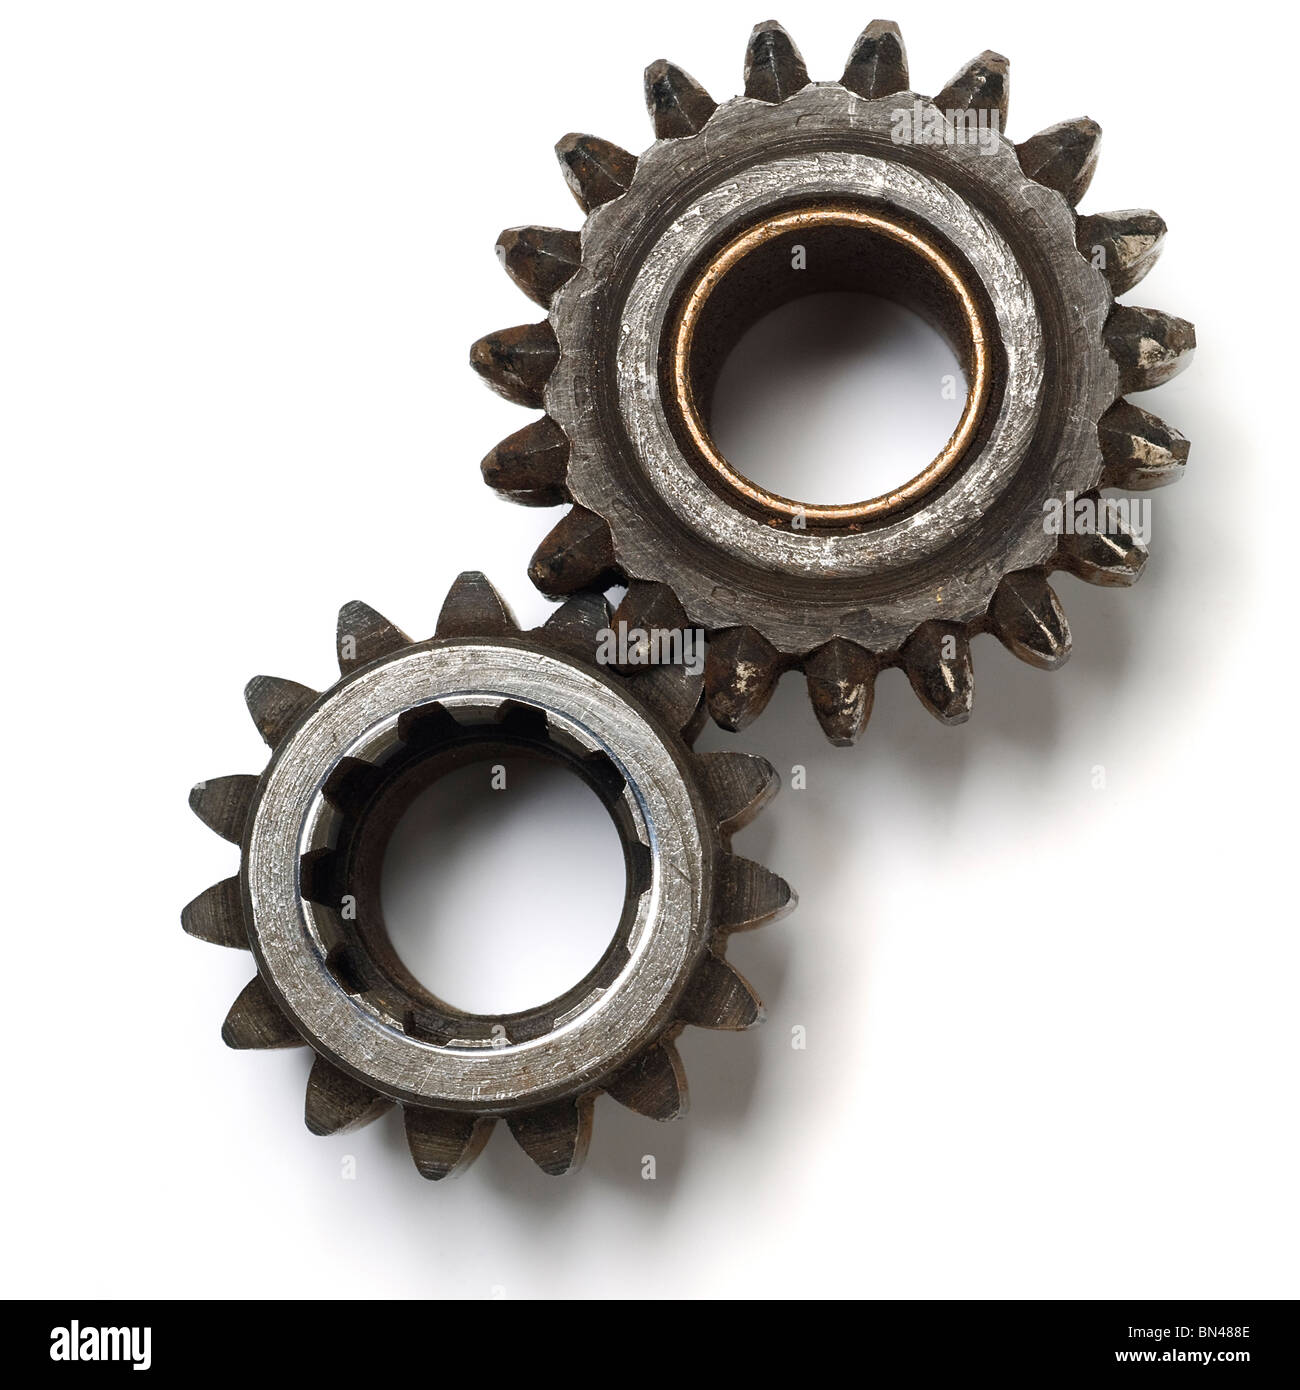 Une paire de rusty gears on white Banque D'Images